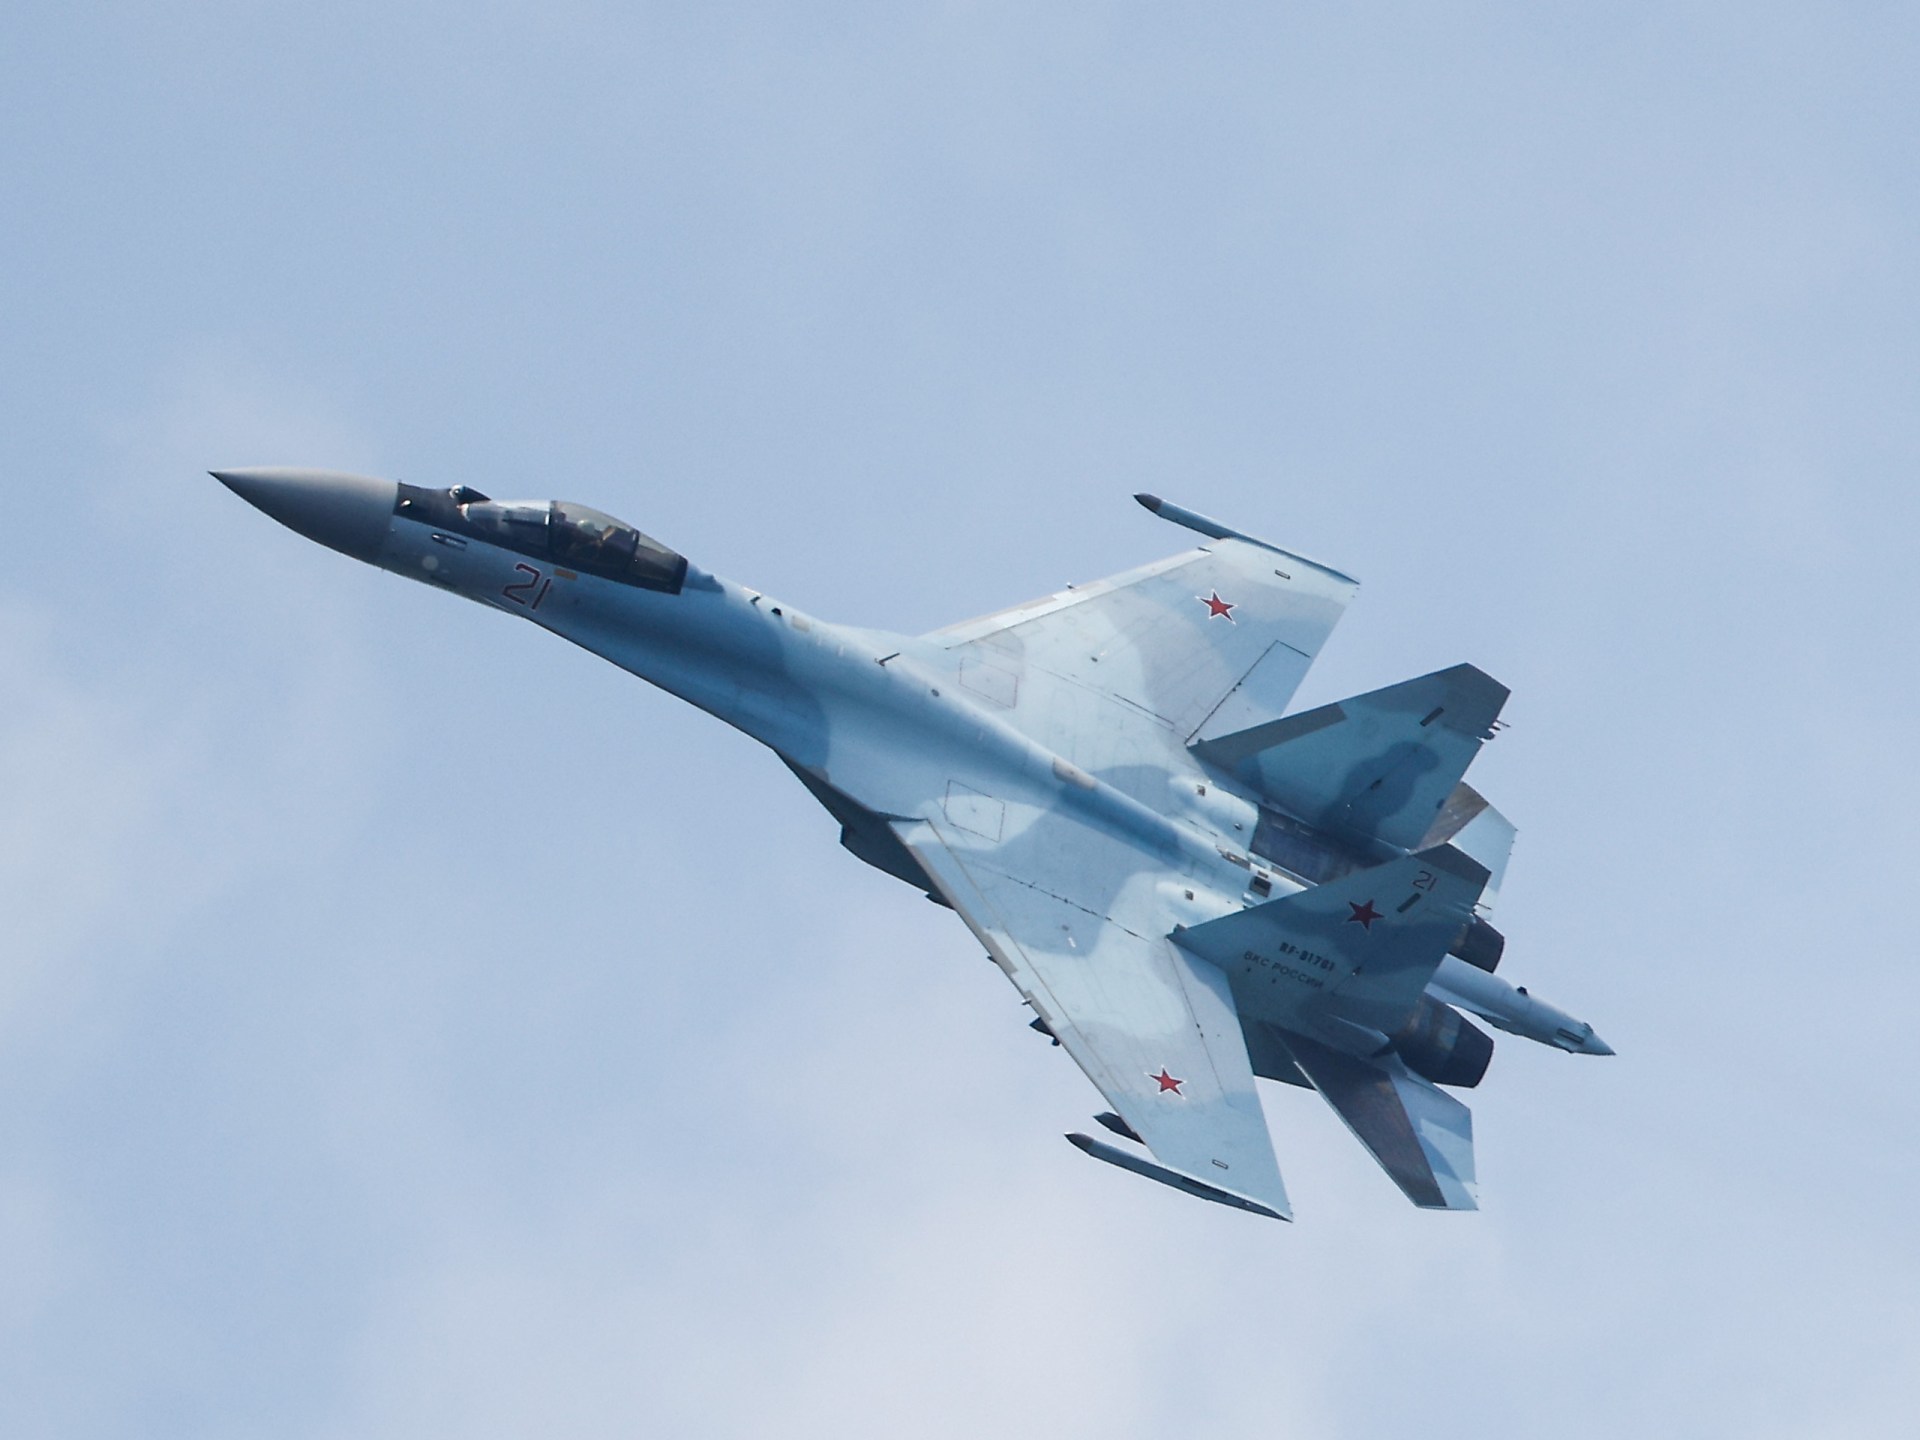 Росія каже, що їхній винищувач злетів, коли американські бомбардувальники B-52 летіли над Балтійським морем |  конфліктні новини